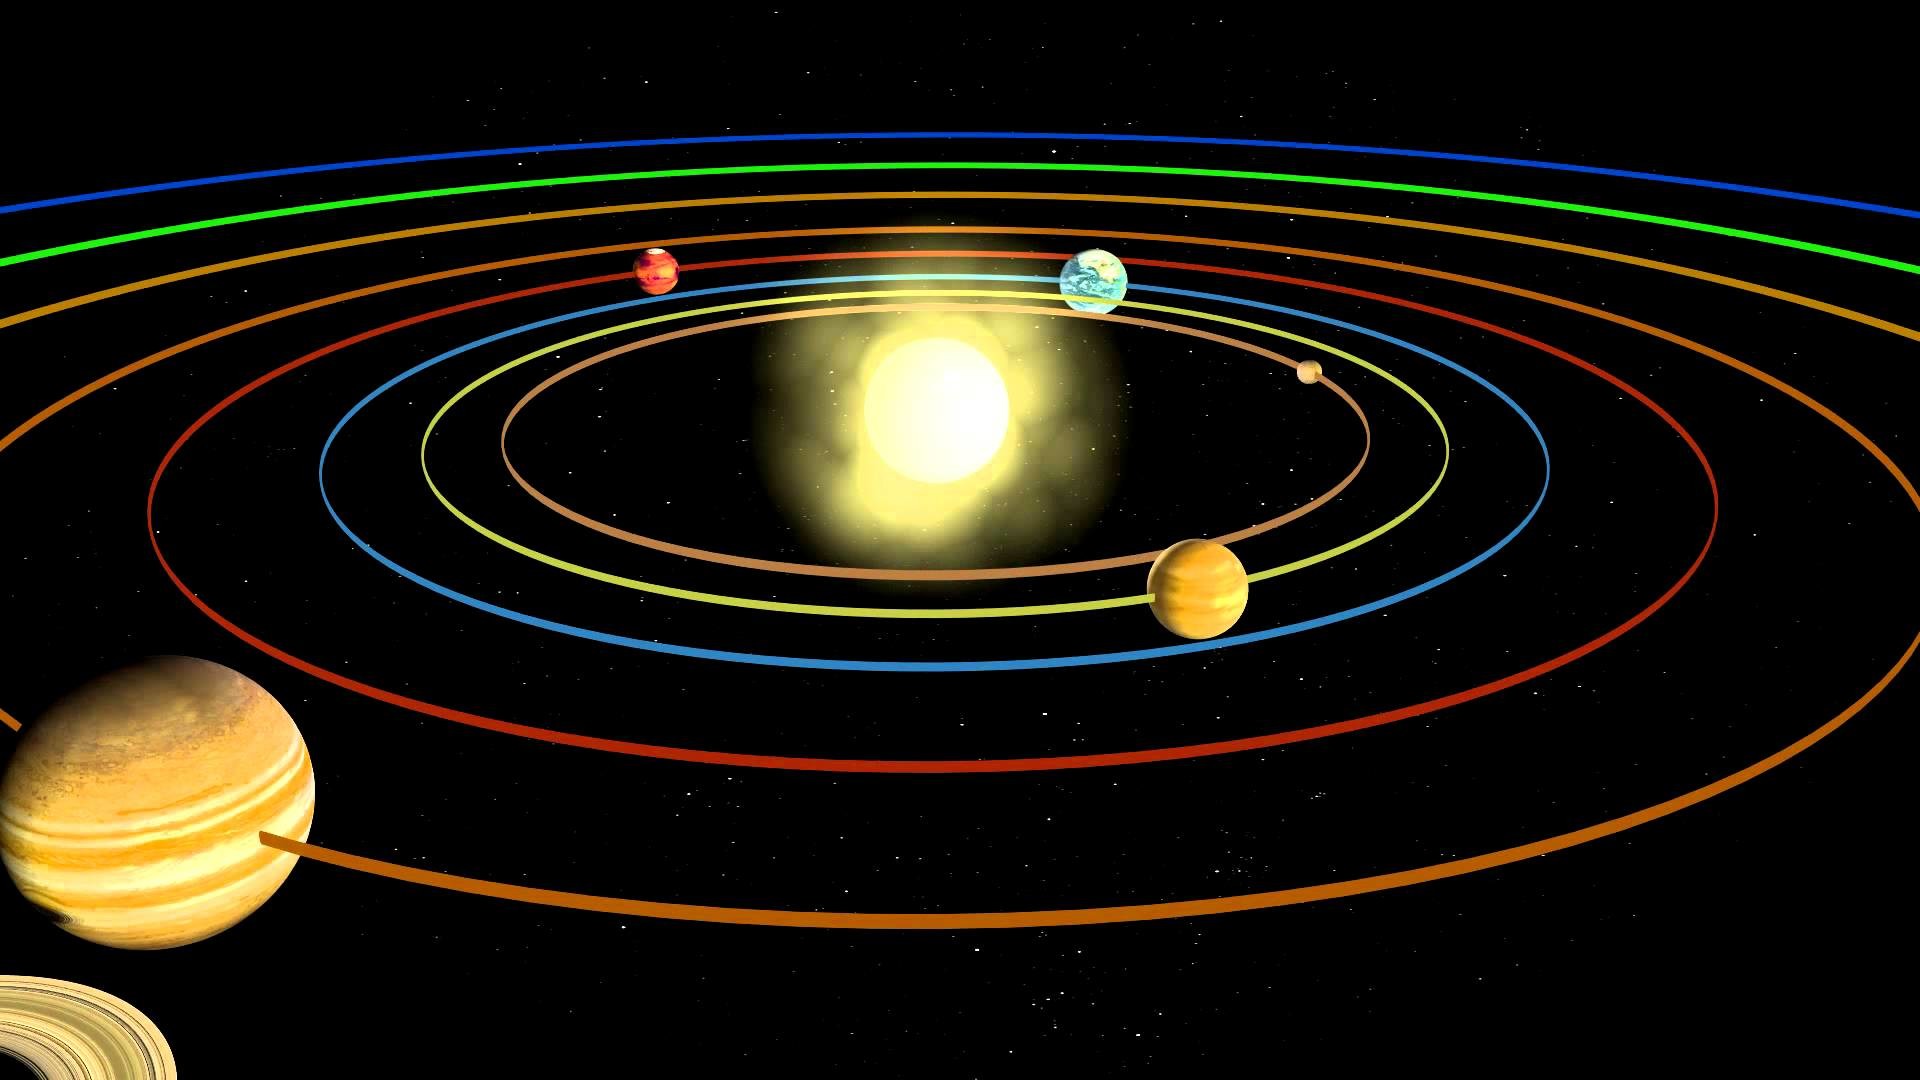 Орбиты планет солнечной системы картинка